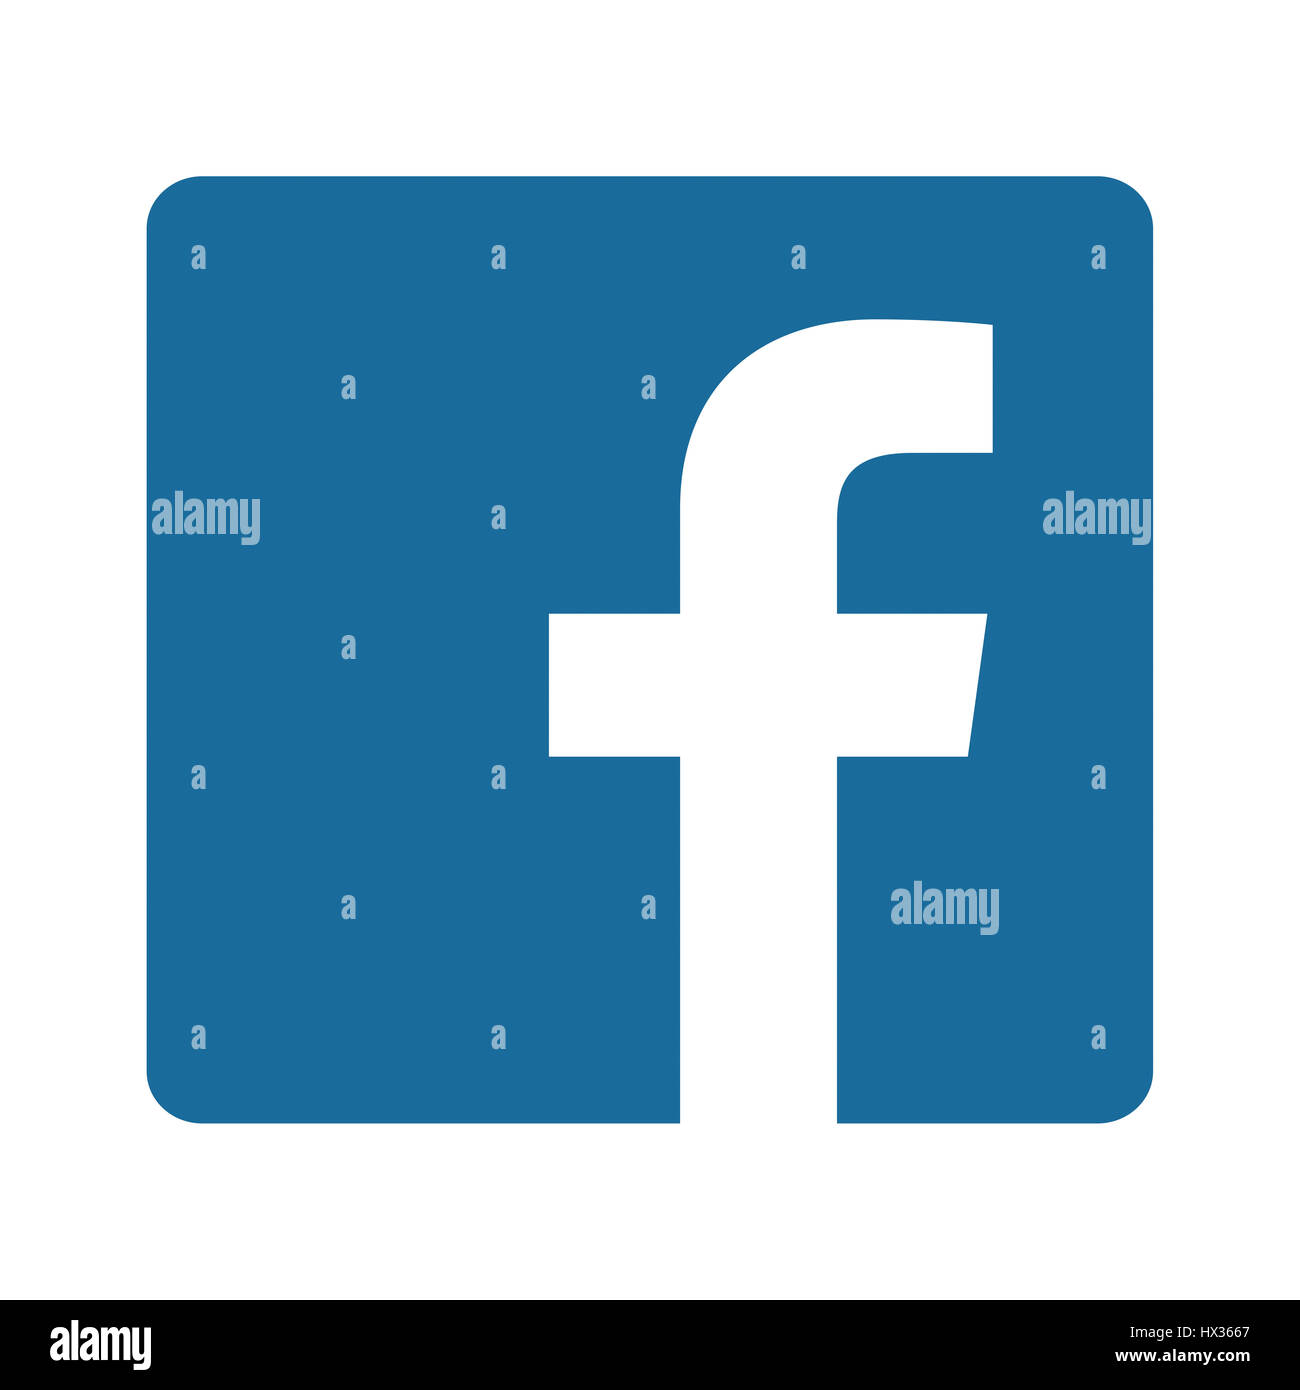 BARCELONA, Spanien - 25. März 2017: Facebook Logo Zeichen auf weißem Hintergrund gedruckt auf Papier. Facebook ist eine bekannte Sozialnetzwerkanschlußservice. Stockfoto